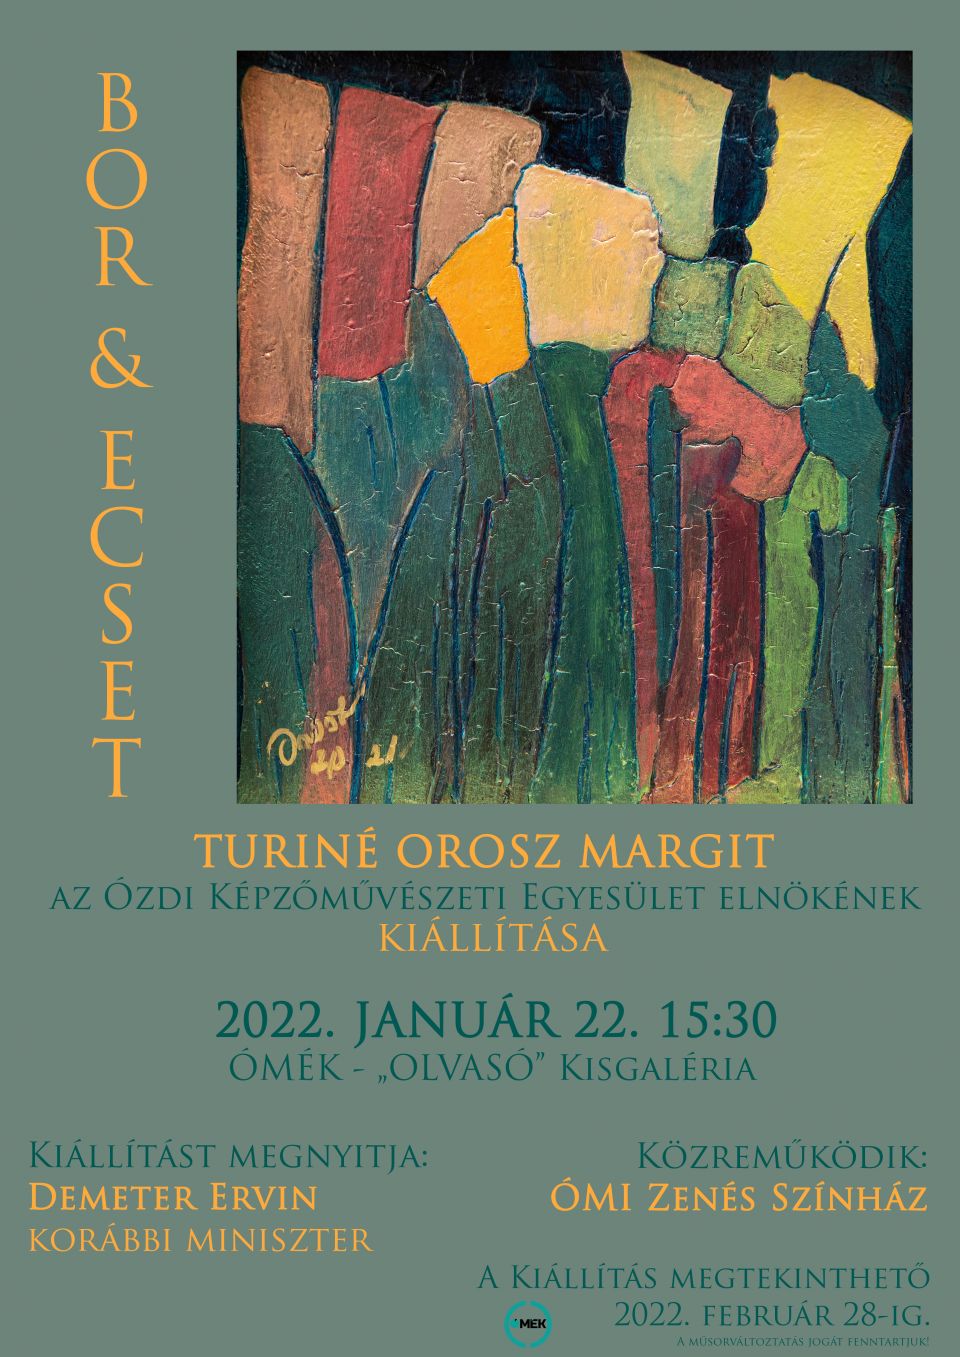 Turiné Orosz Margit kiállítása